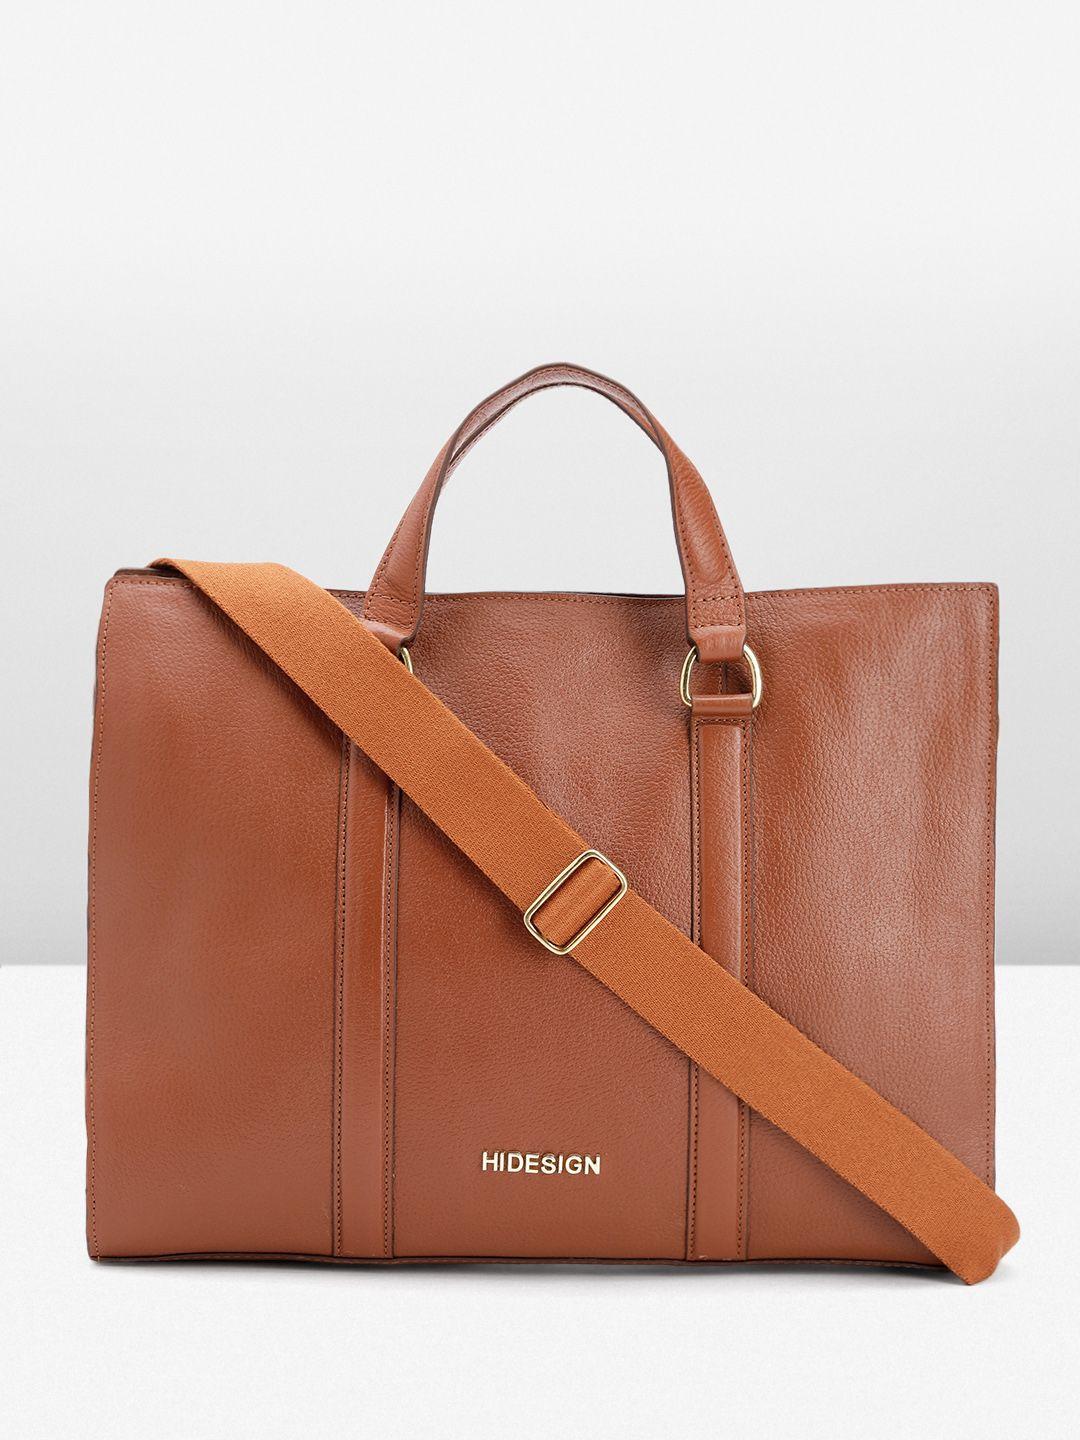 hidesign men leather messenger bag